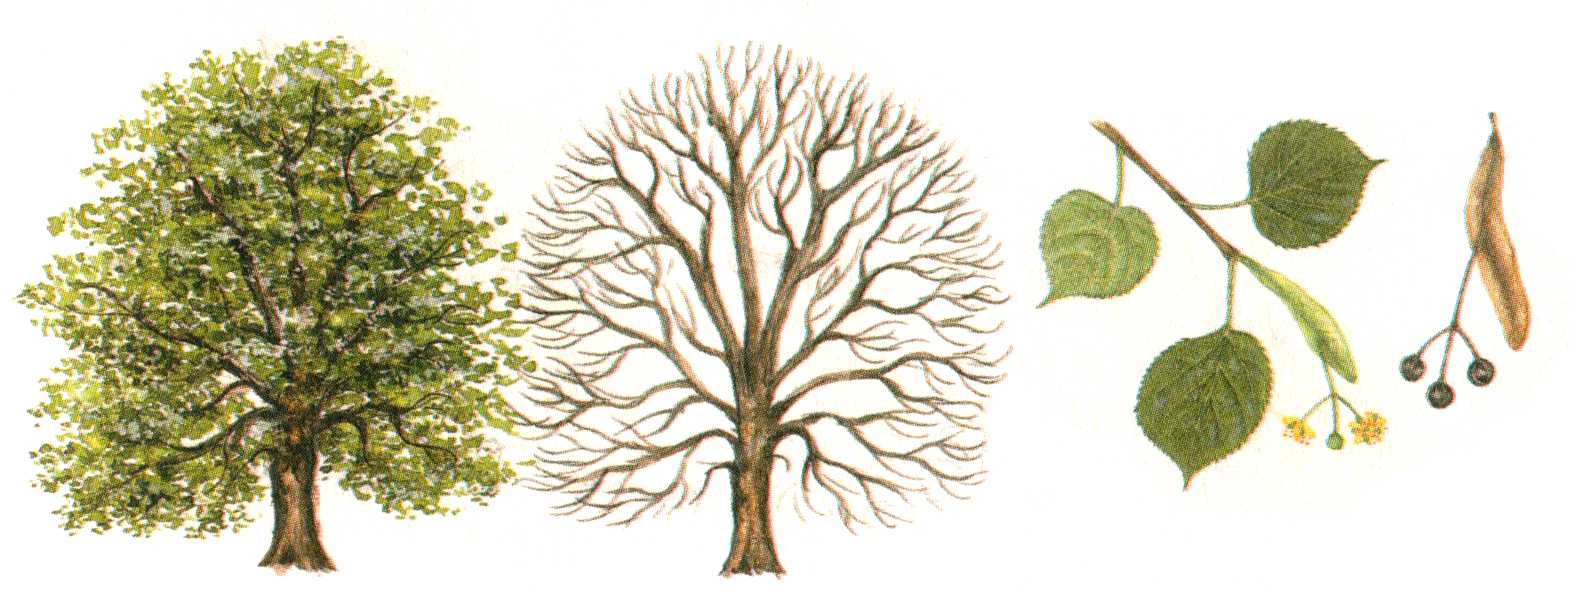 Липа – дерево с низкой поражаемостью насекомыми-вредителями, отличный медонос и отделочный материал